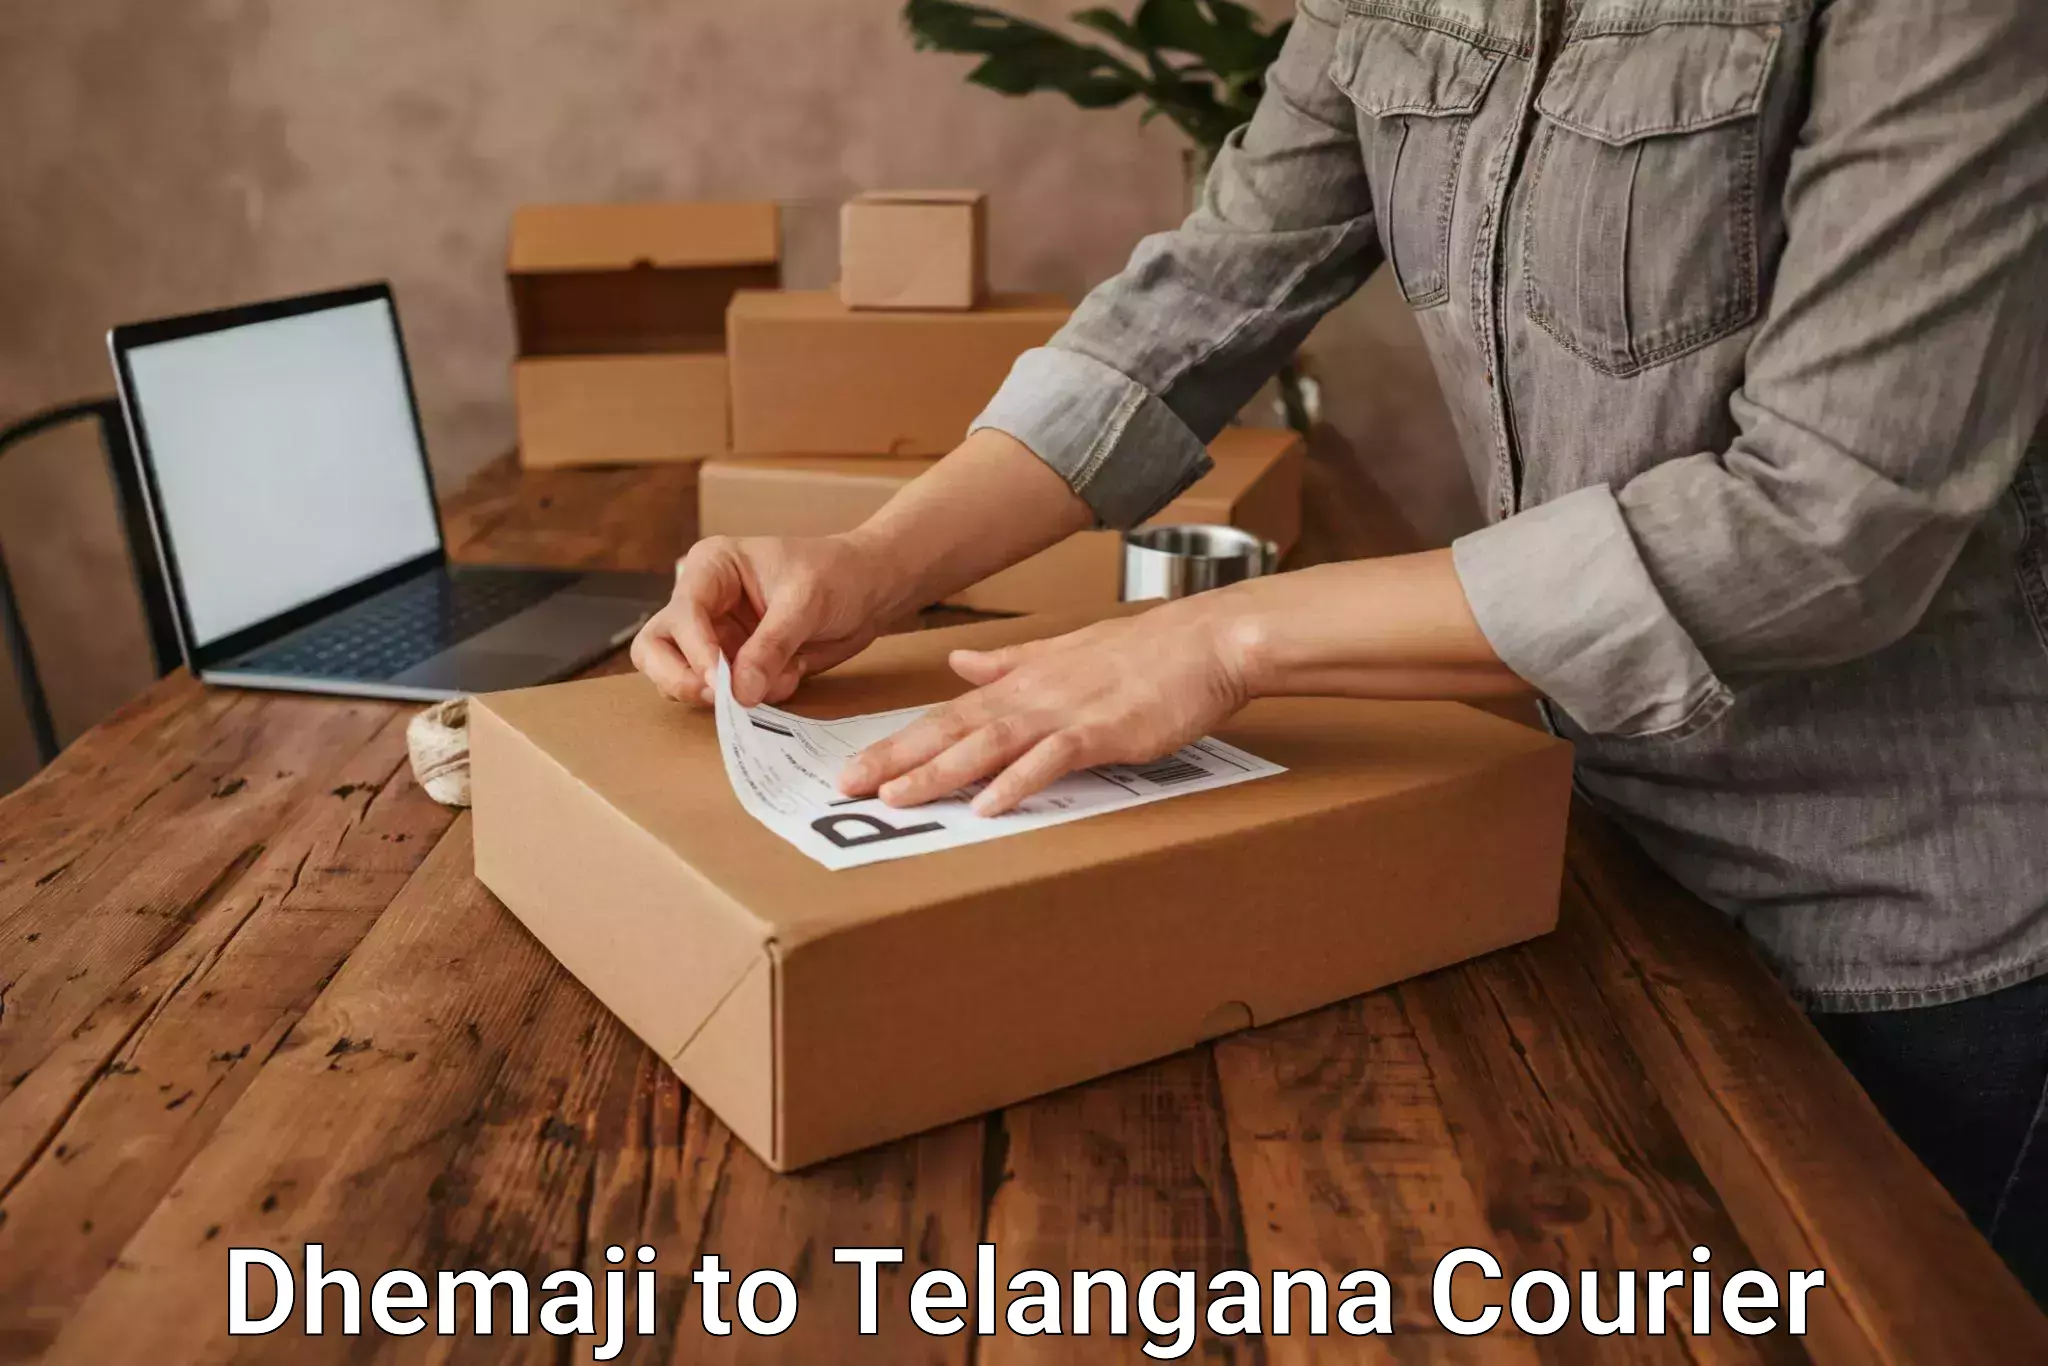 Premium courier solutions Dhemaji to Nereducharla